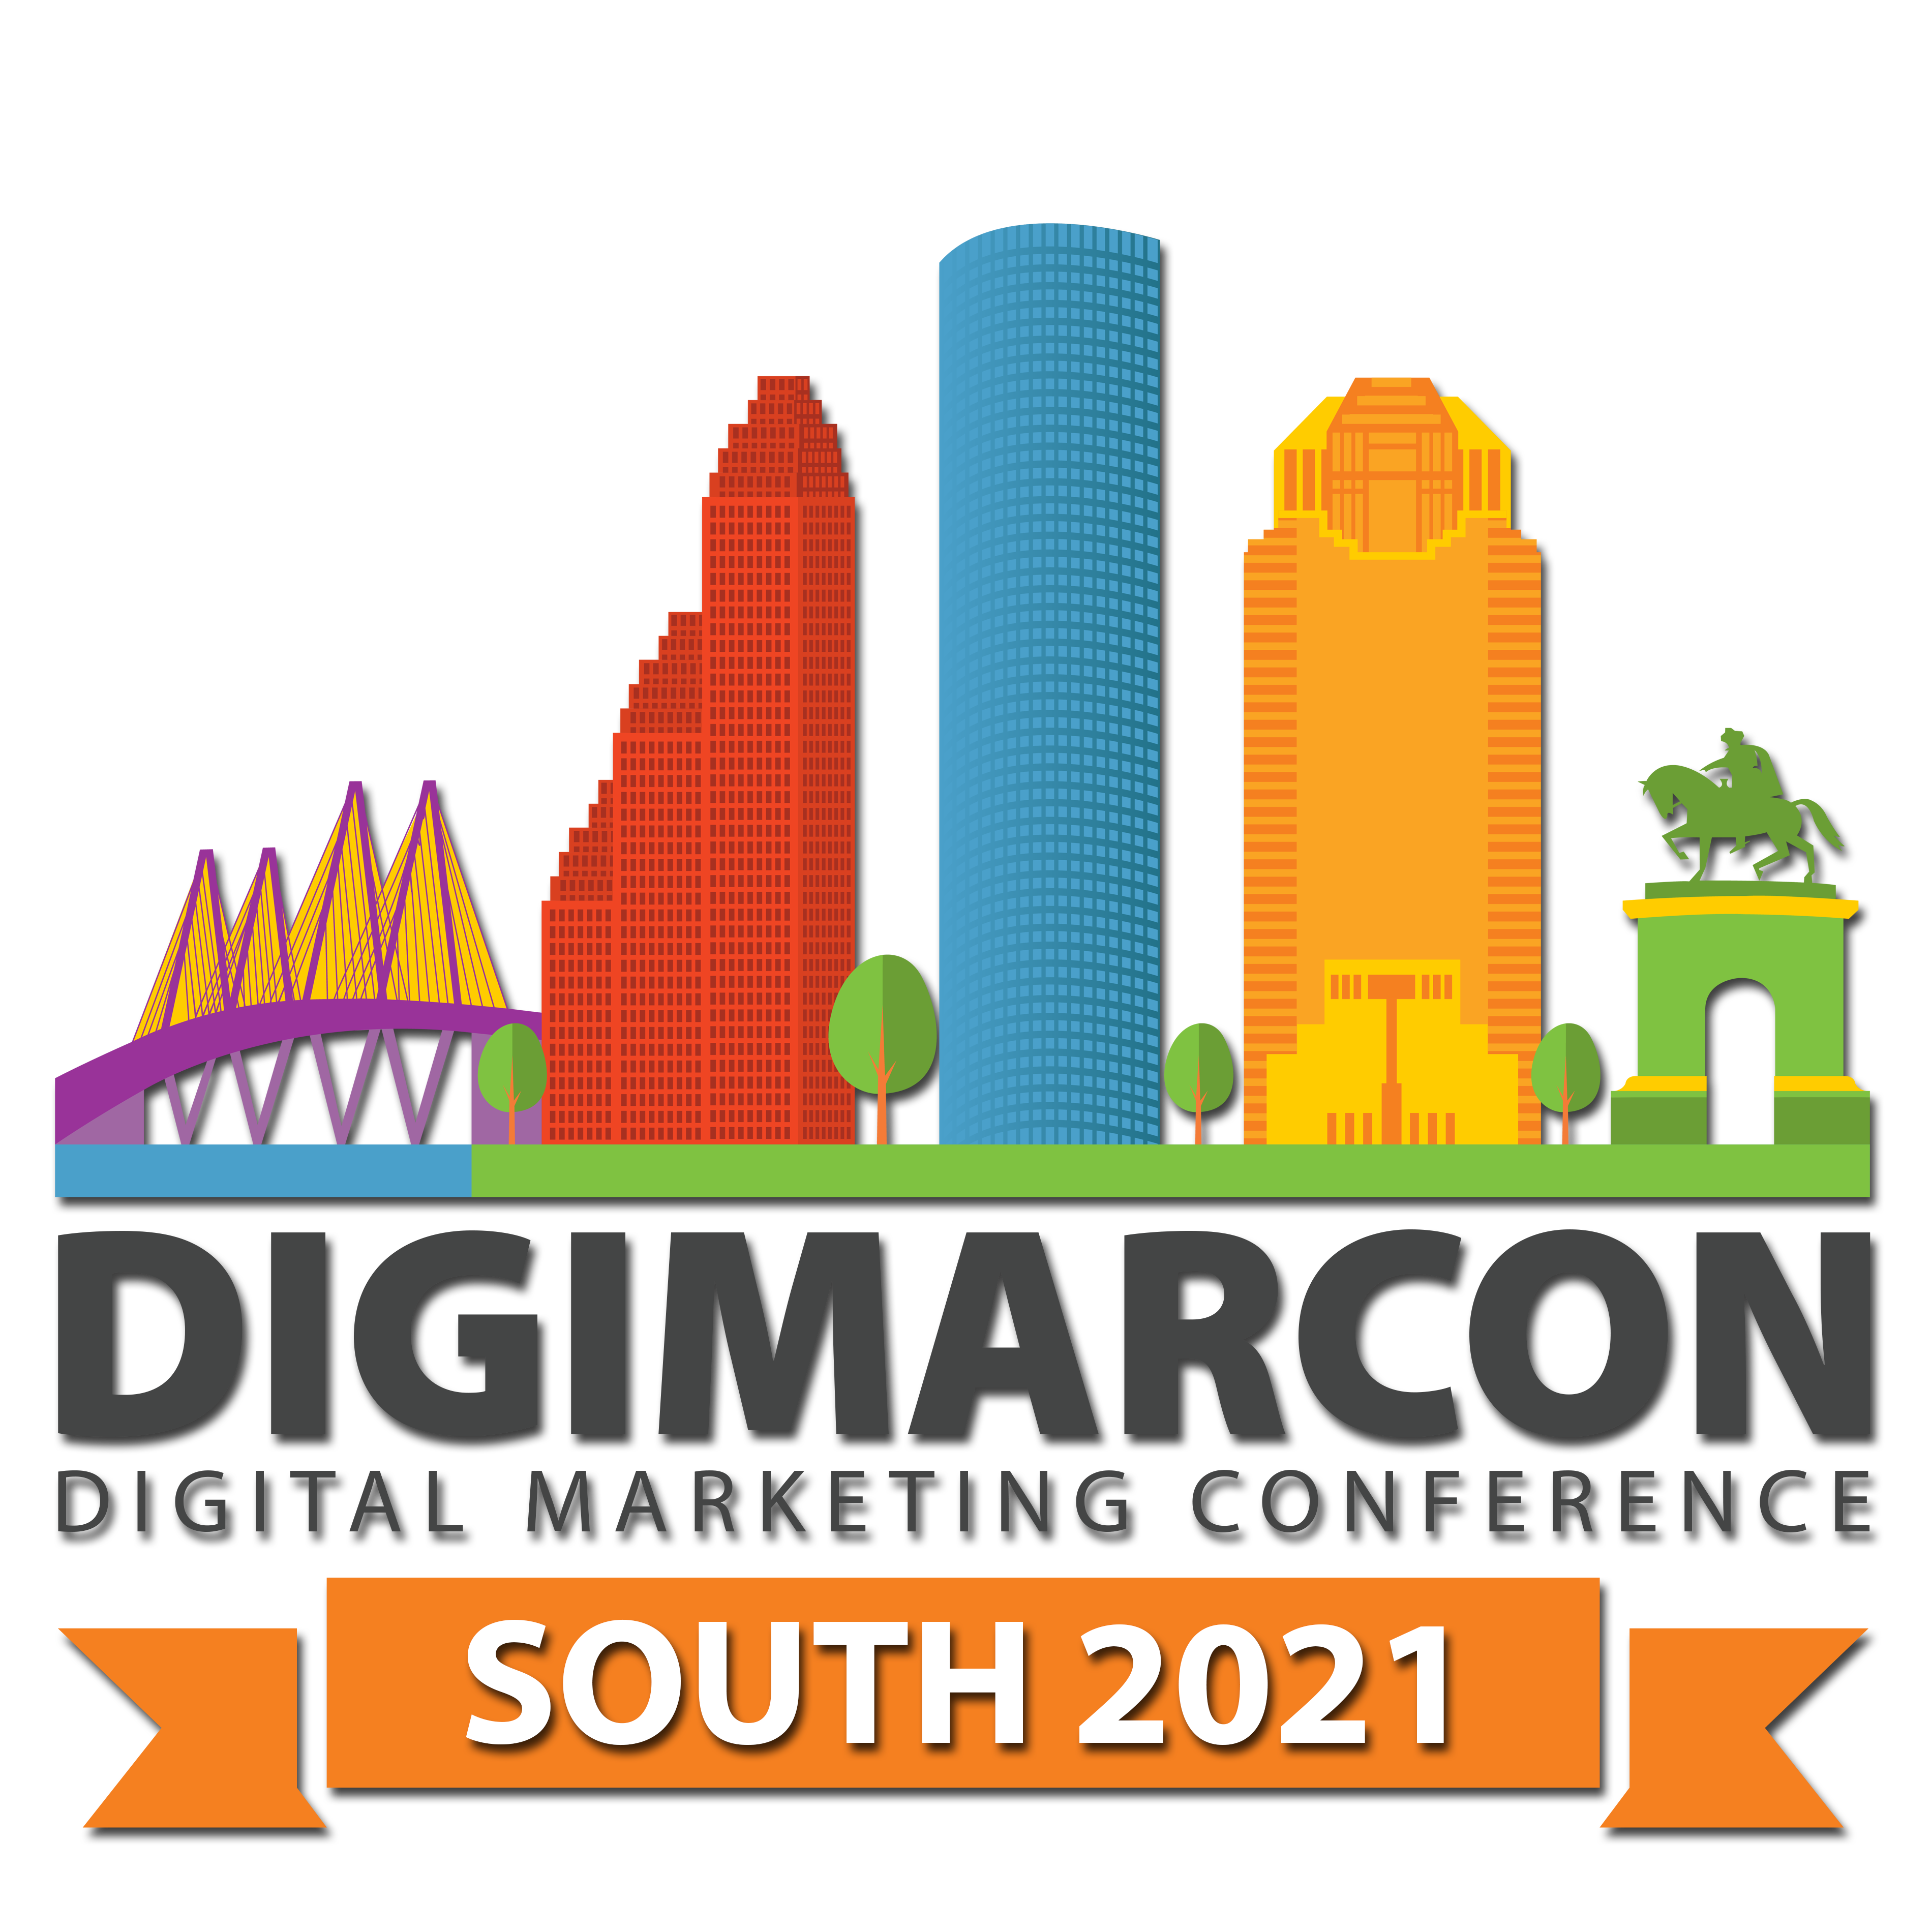 DigiMarCon Mediterranean – Digital Marketing Conference & Exhibition